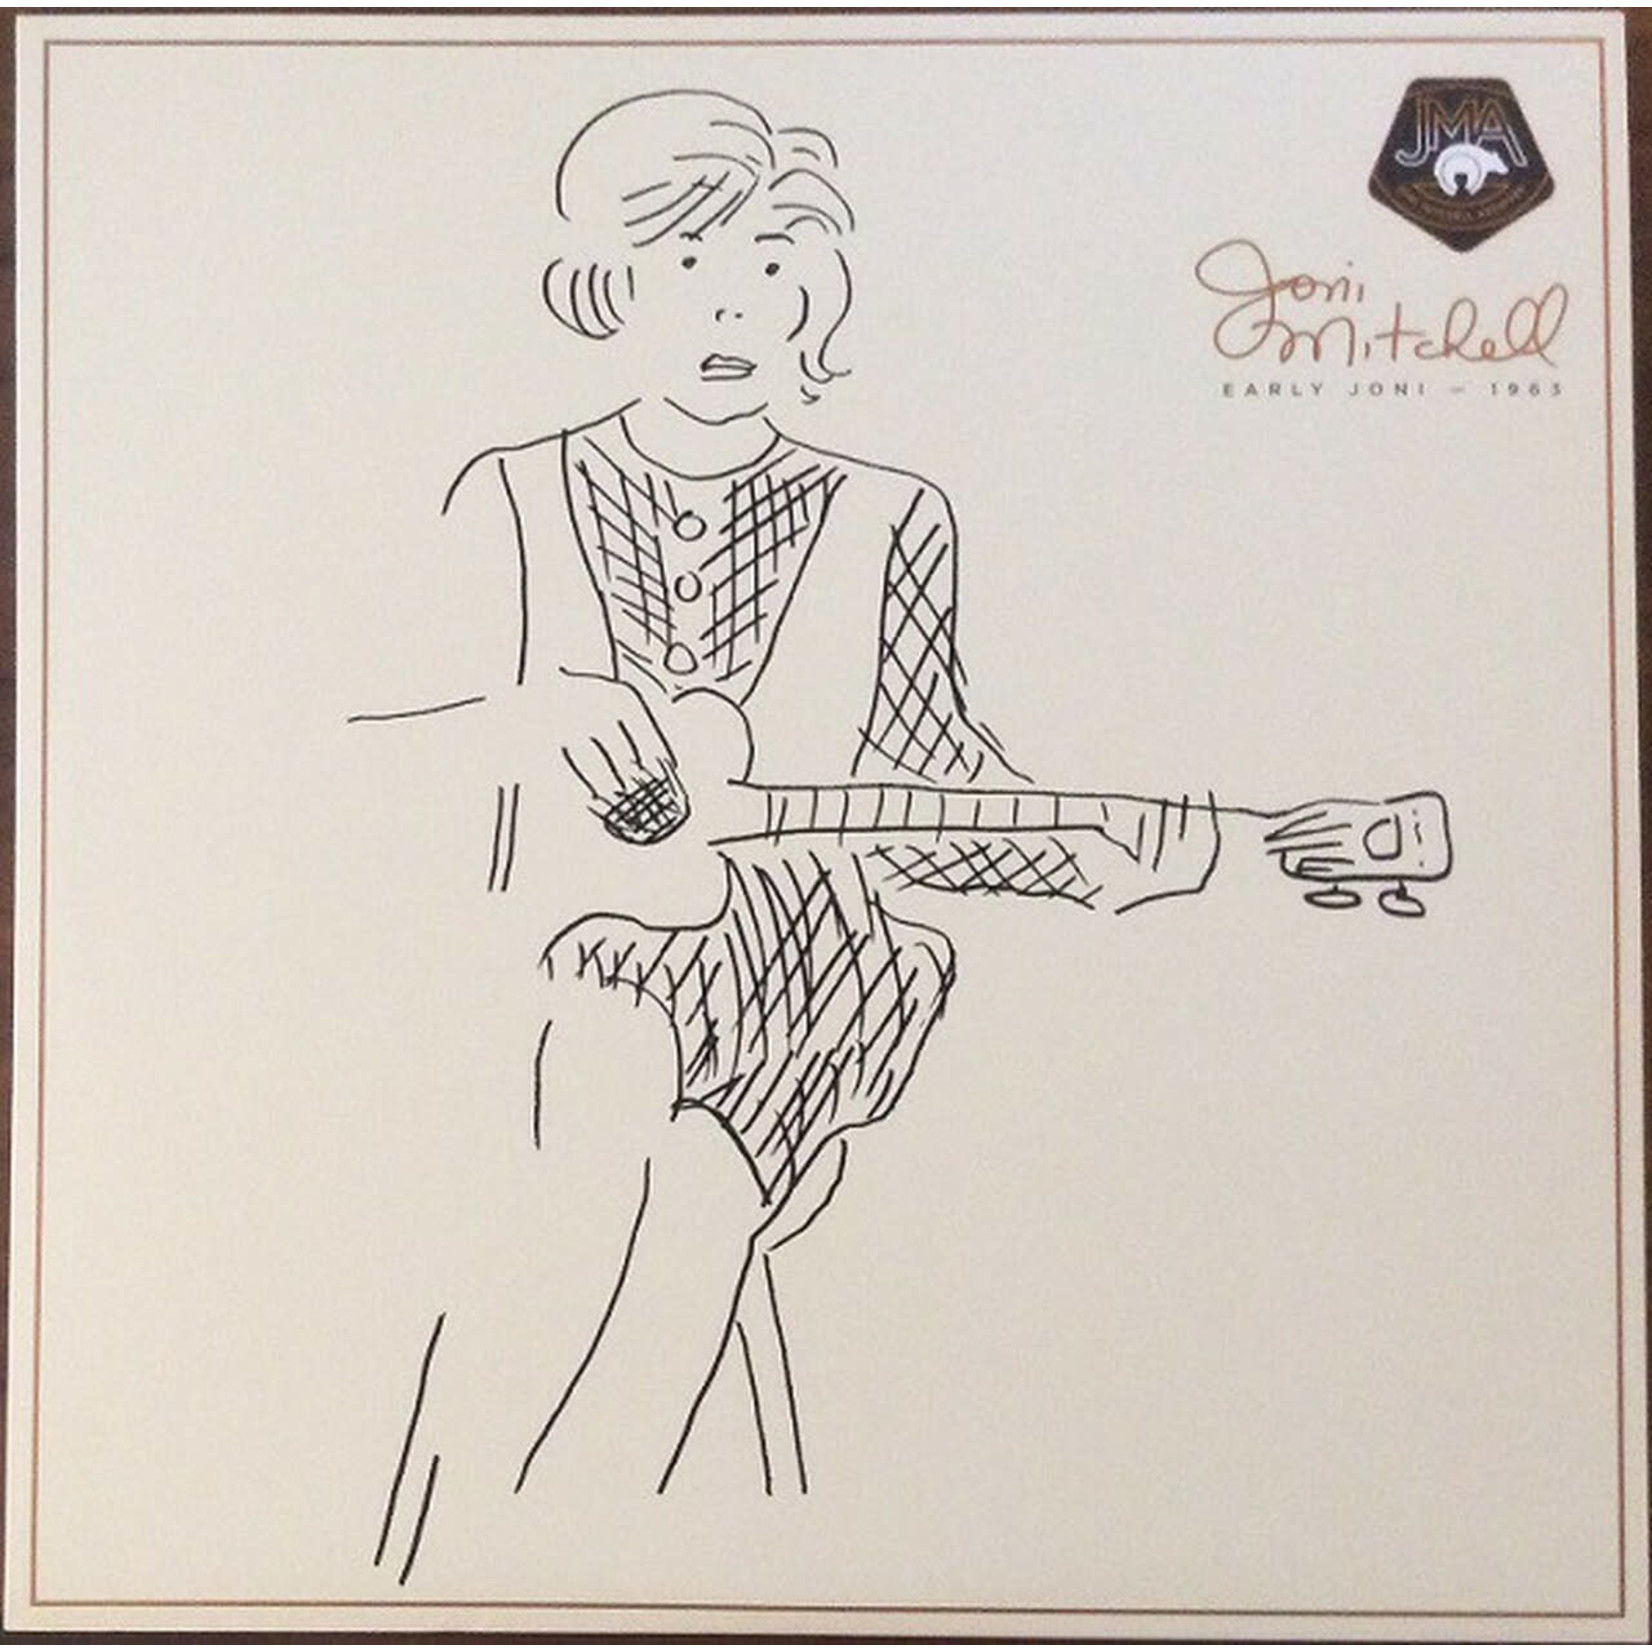 [New] Joni Mitchell - Early Joni - 1963